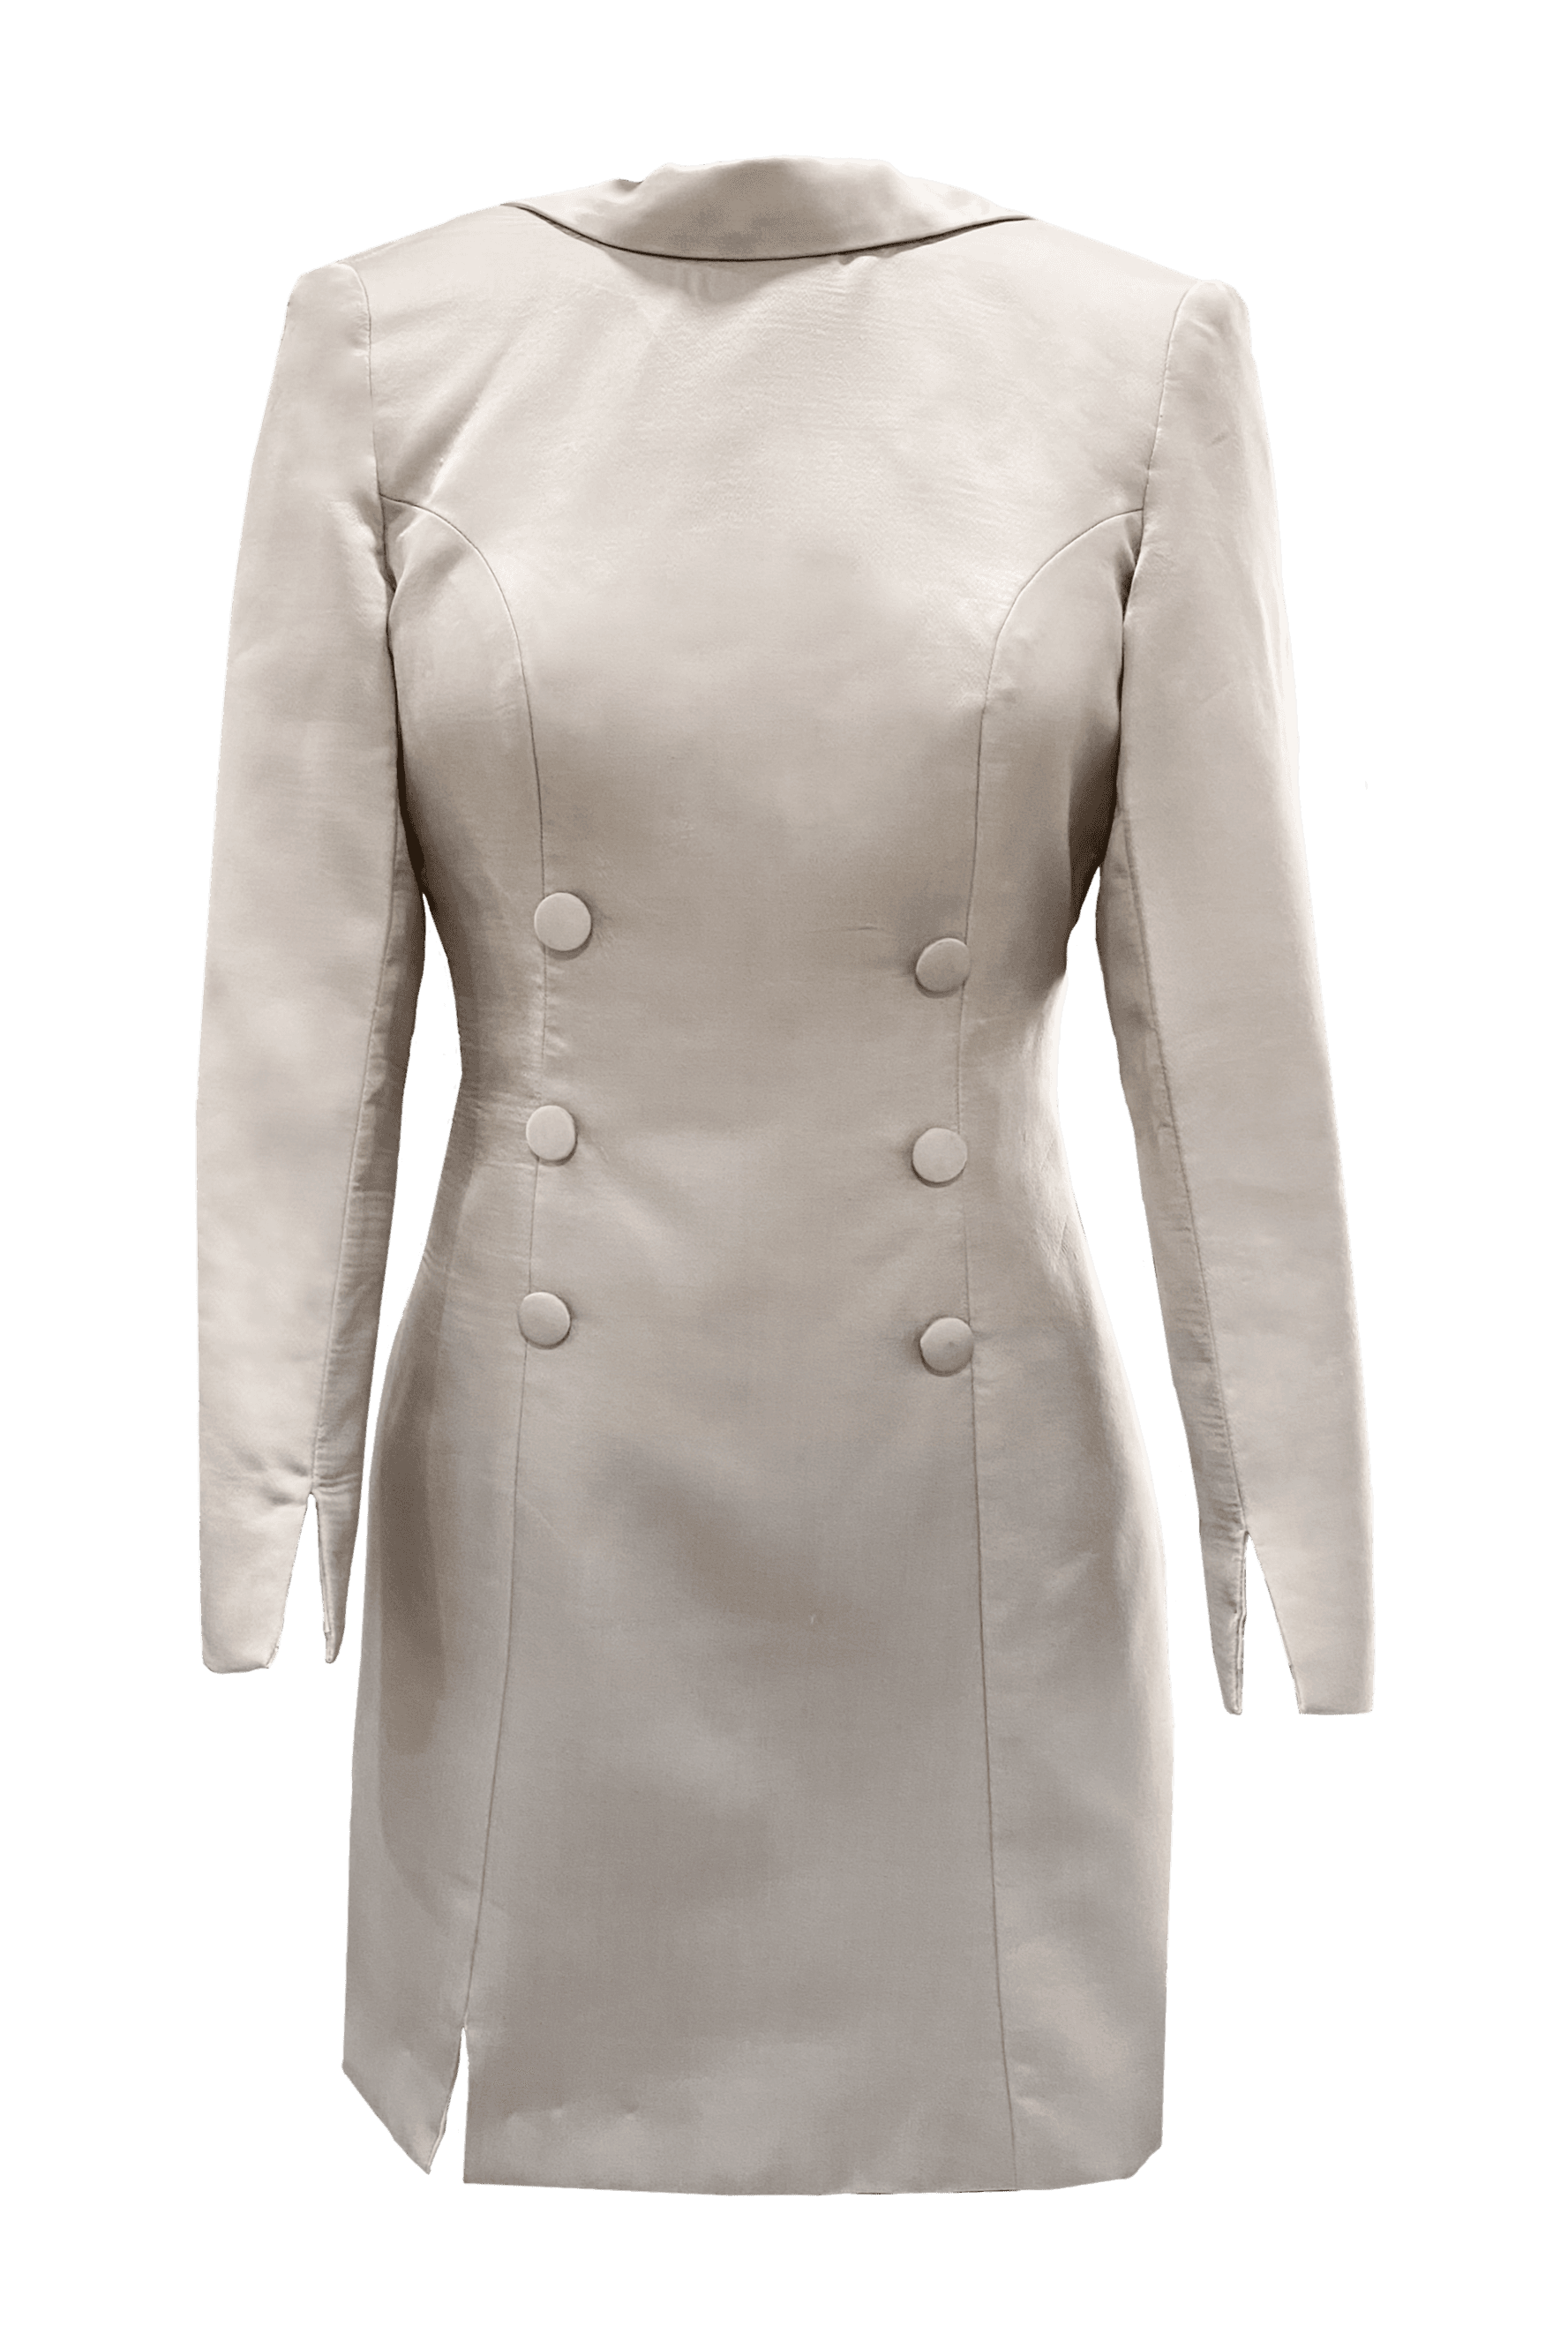 shivanii iconic blazer dress